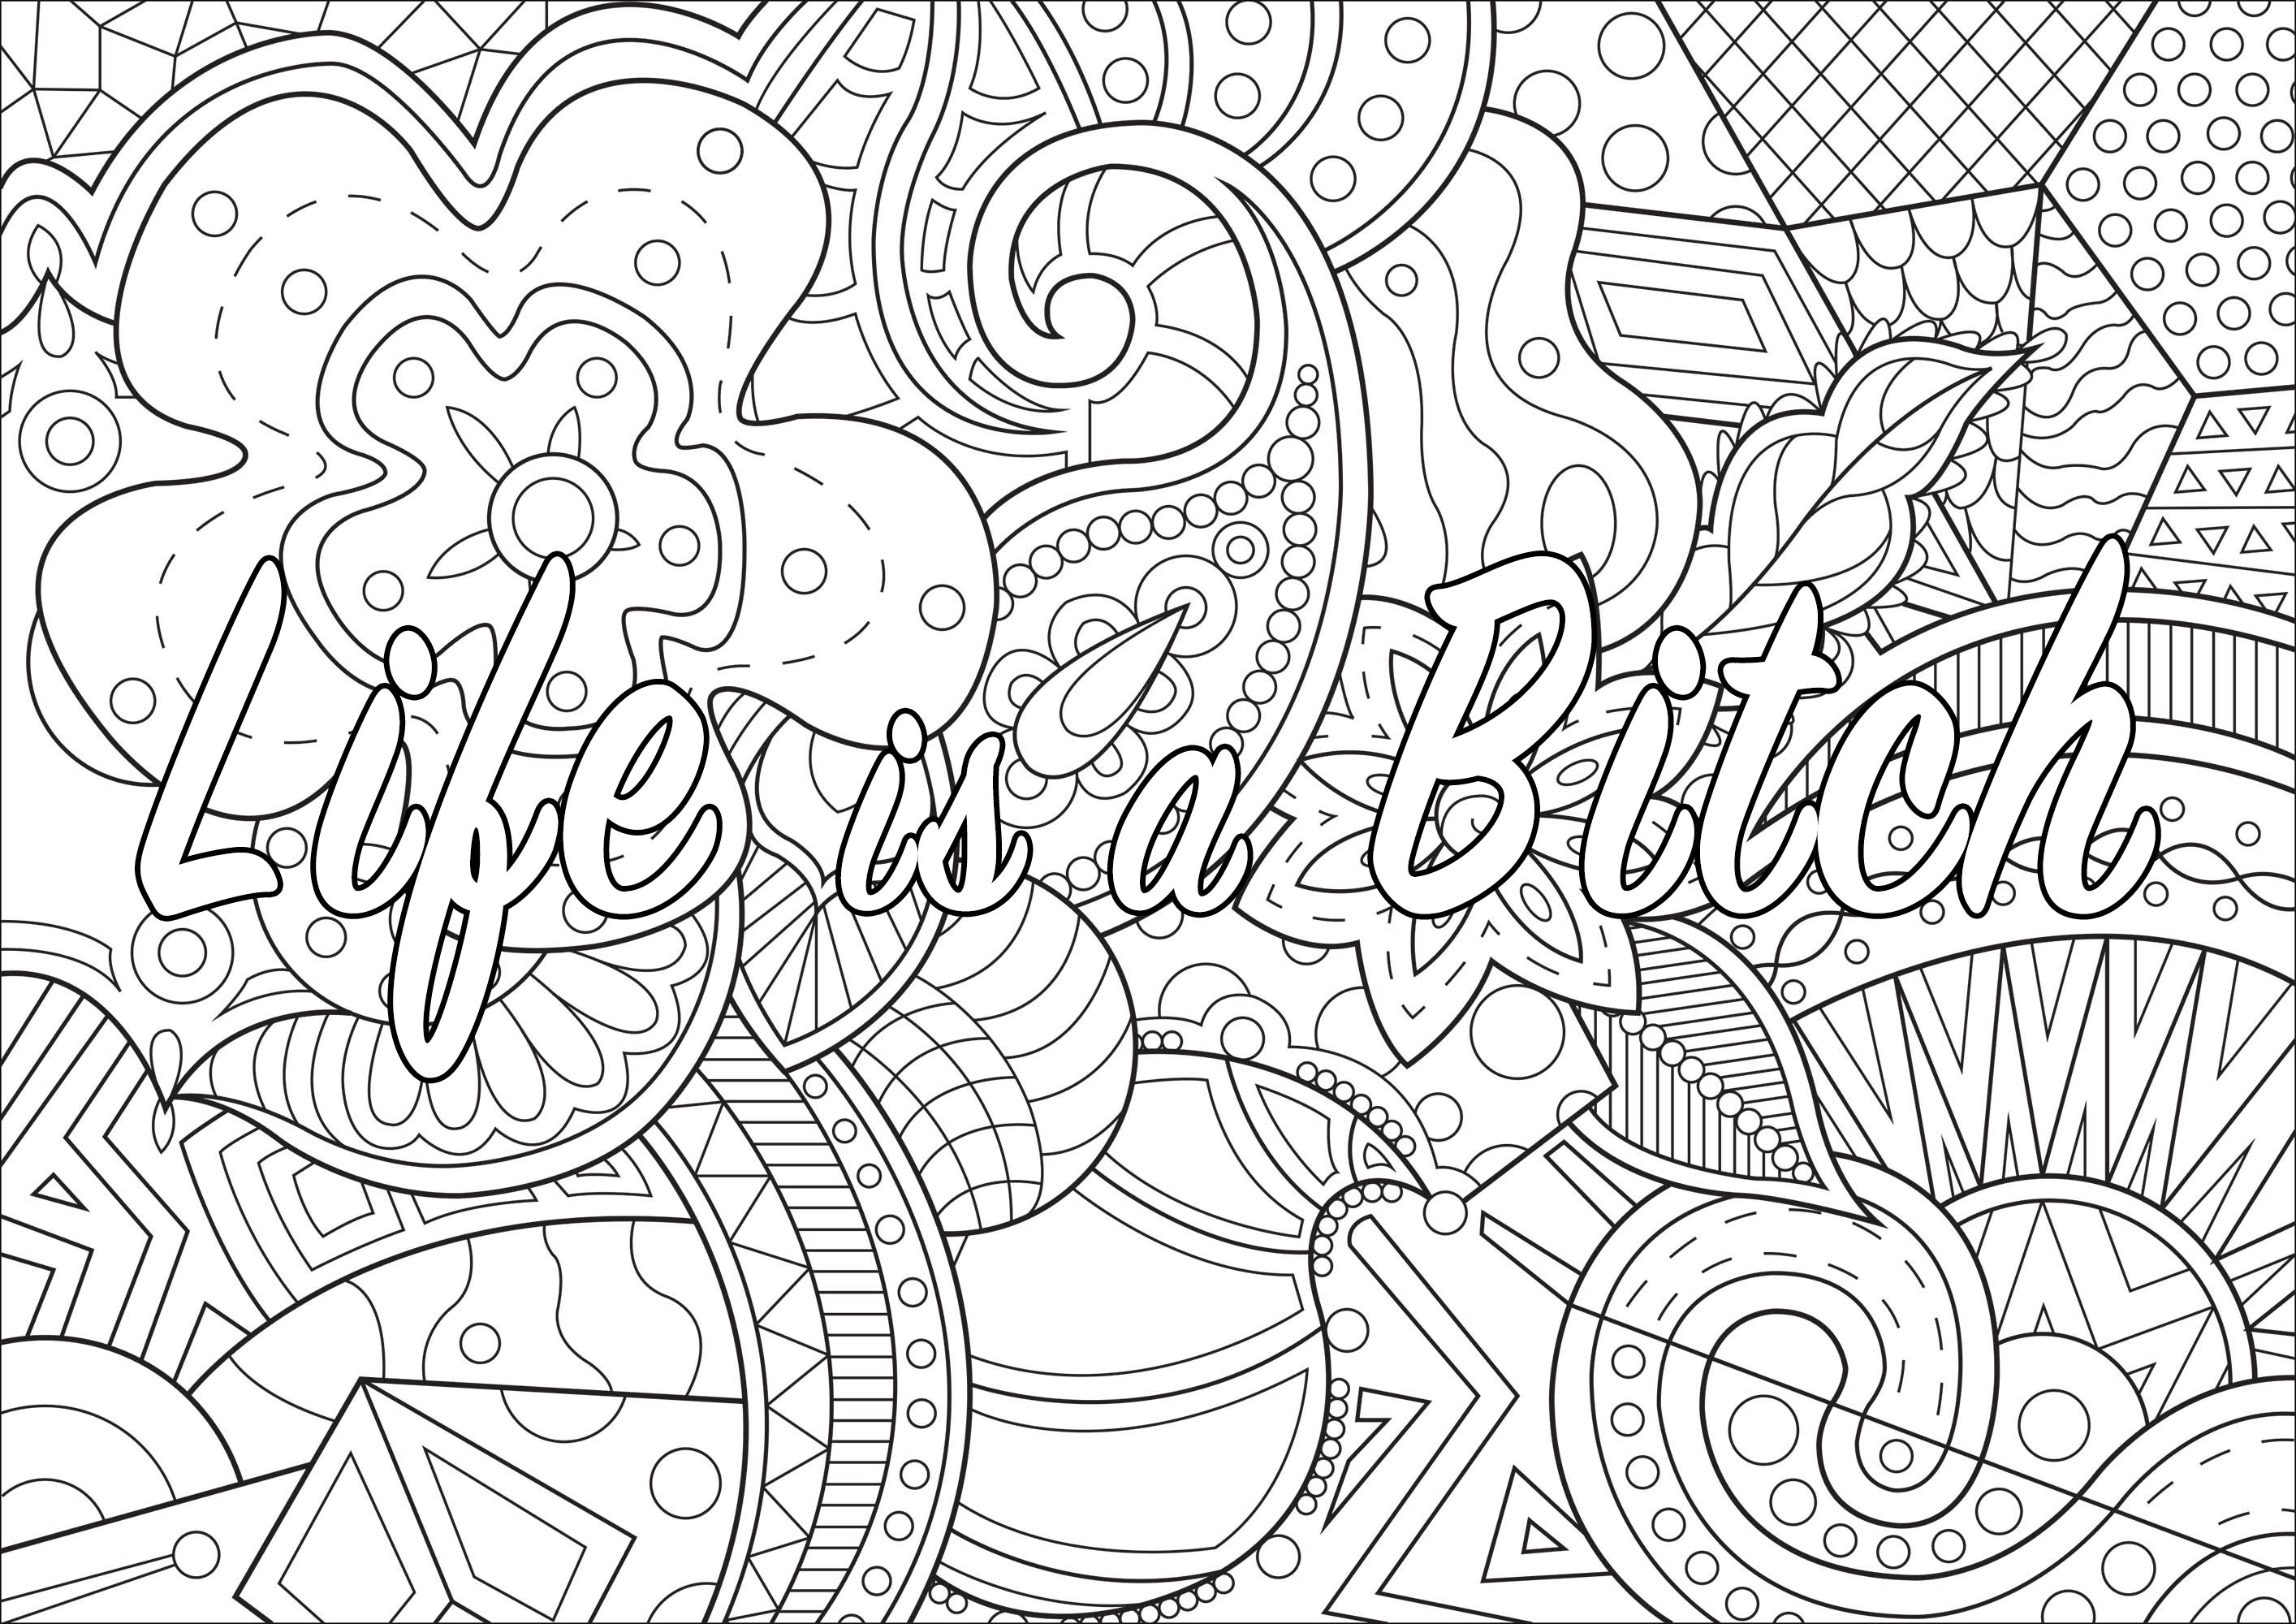 La vita è una stronza.  : Pagina di parolacce da colorare con disegni di sfondo